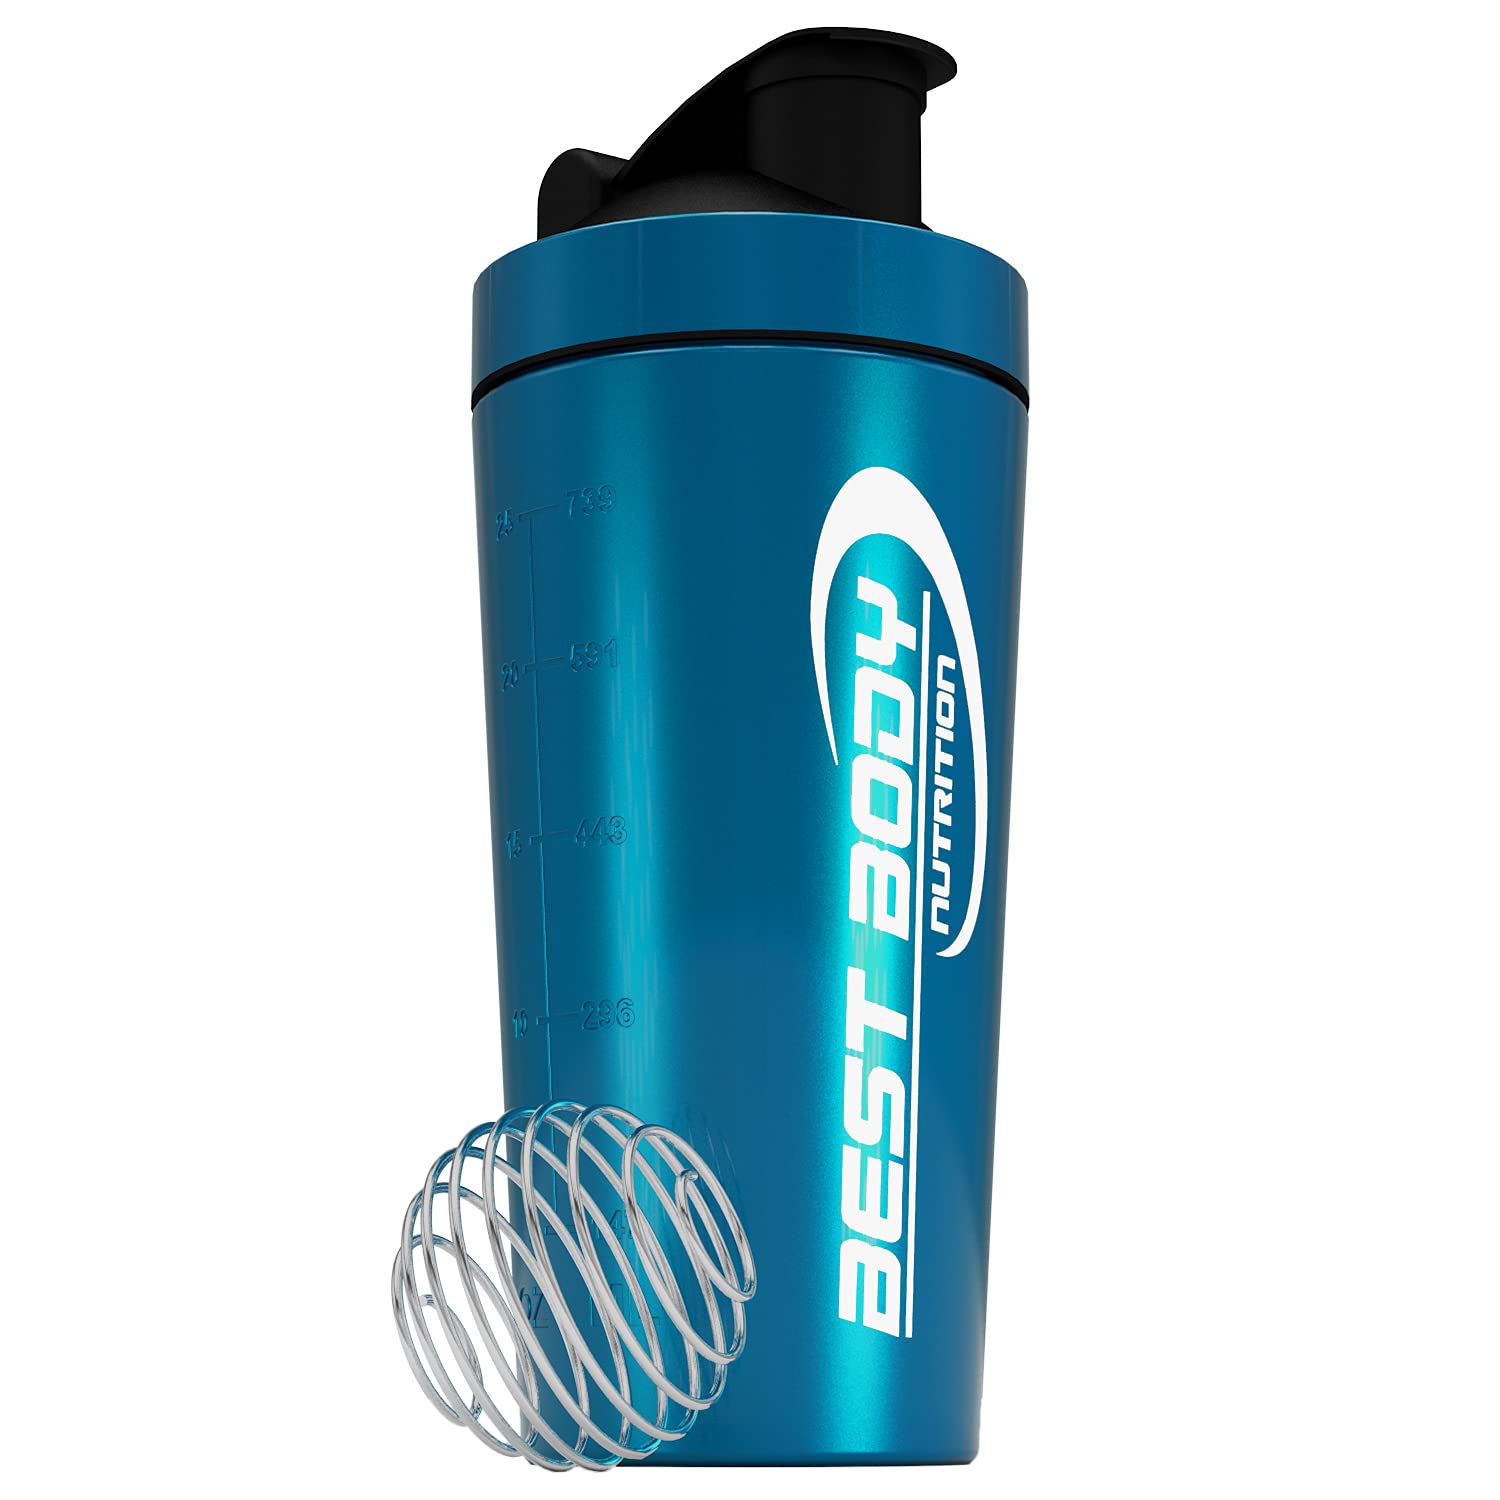 en vente Best Body Nutrition Shaker pour boisson protéinée, en acier inoxydable, avec tamis intégré et boule en spirale, bleu o8z0KigLl en ligne